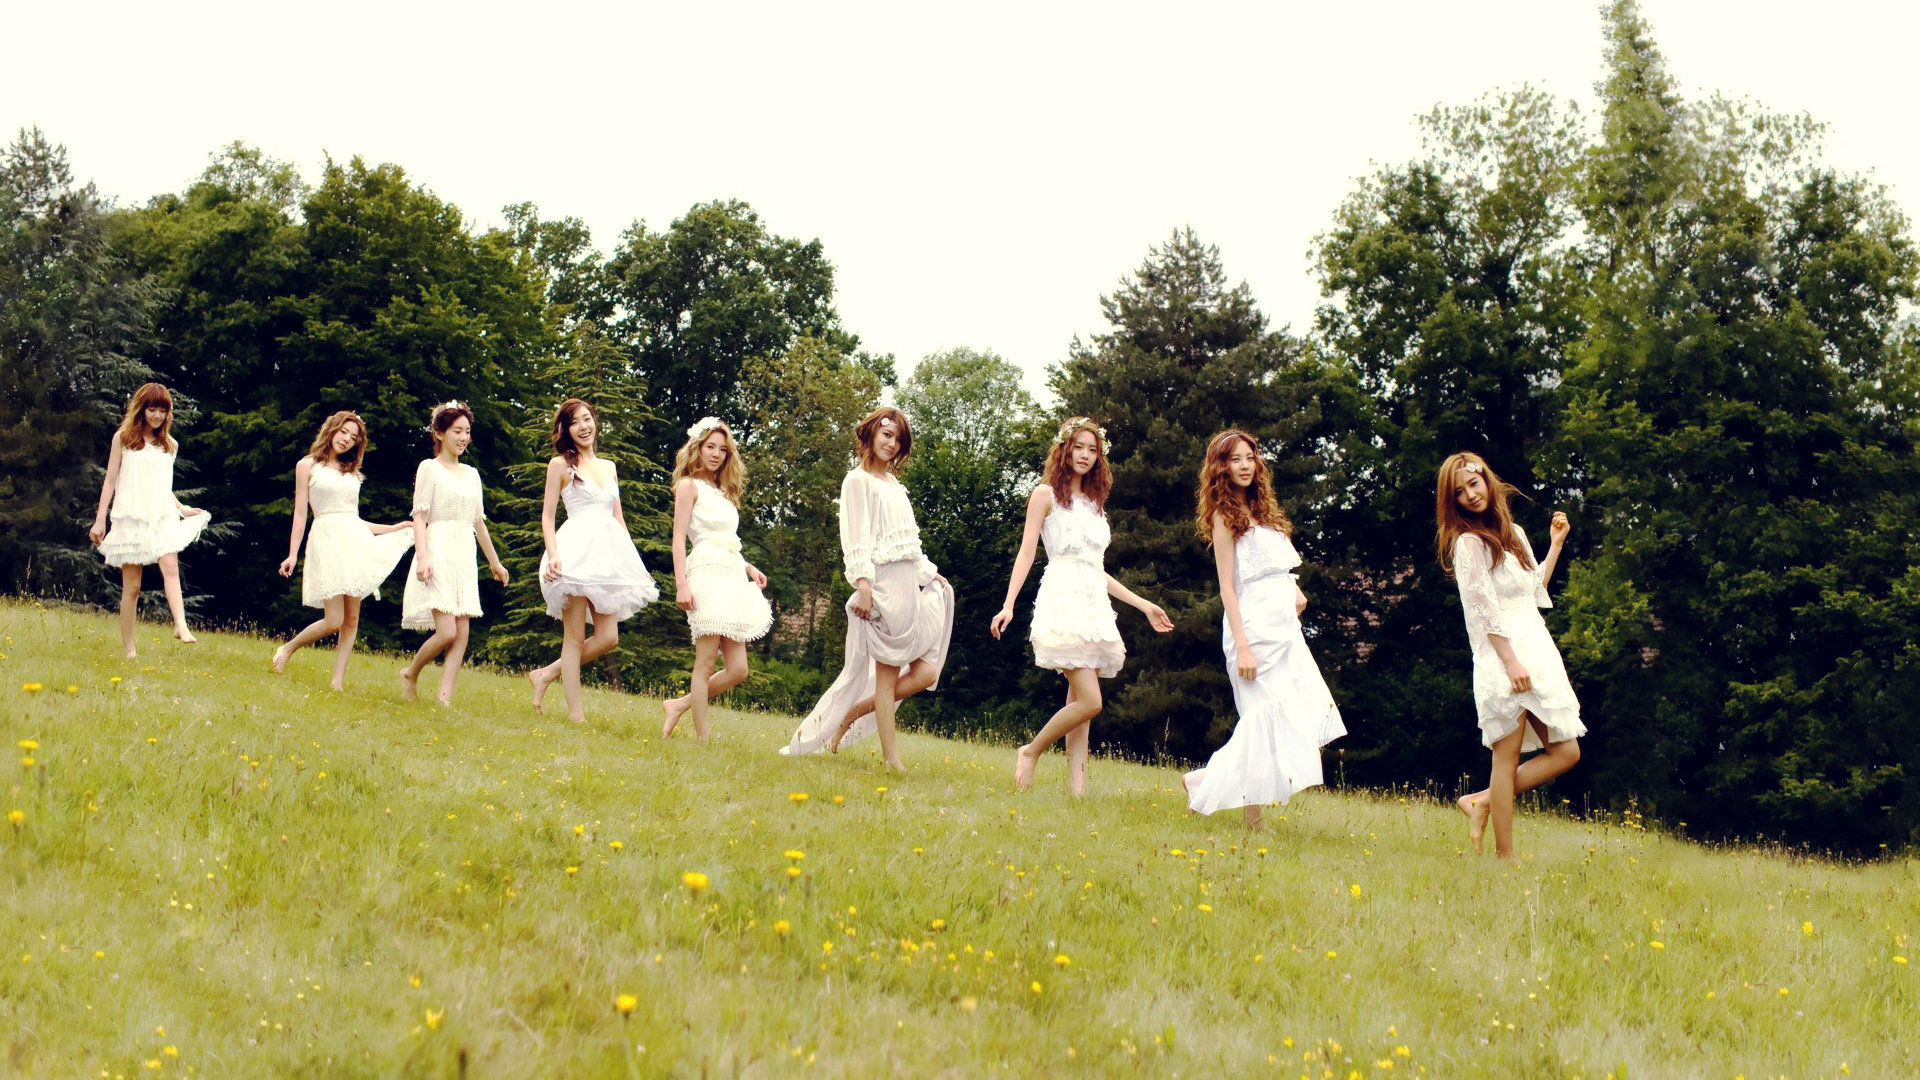 少女时代，美女组合，白色裙子，野外，自然风景，踏青，美女桌面壁纸